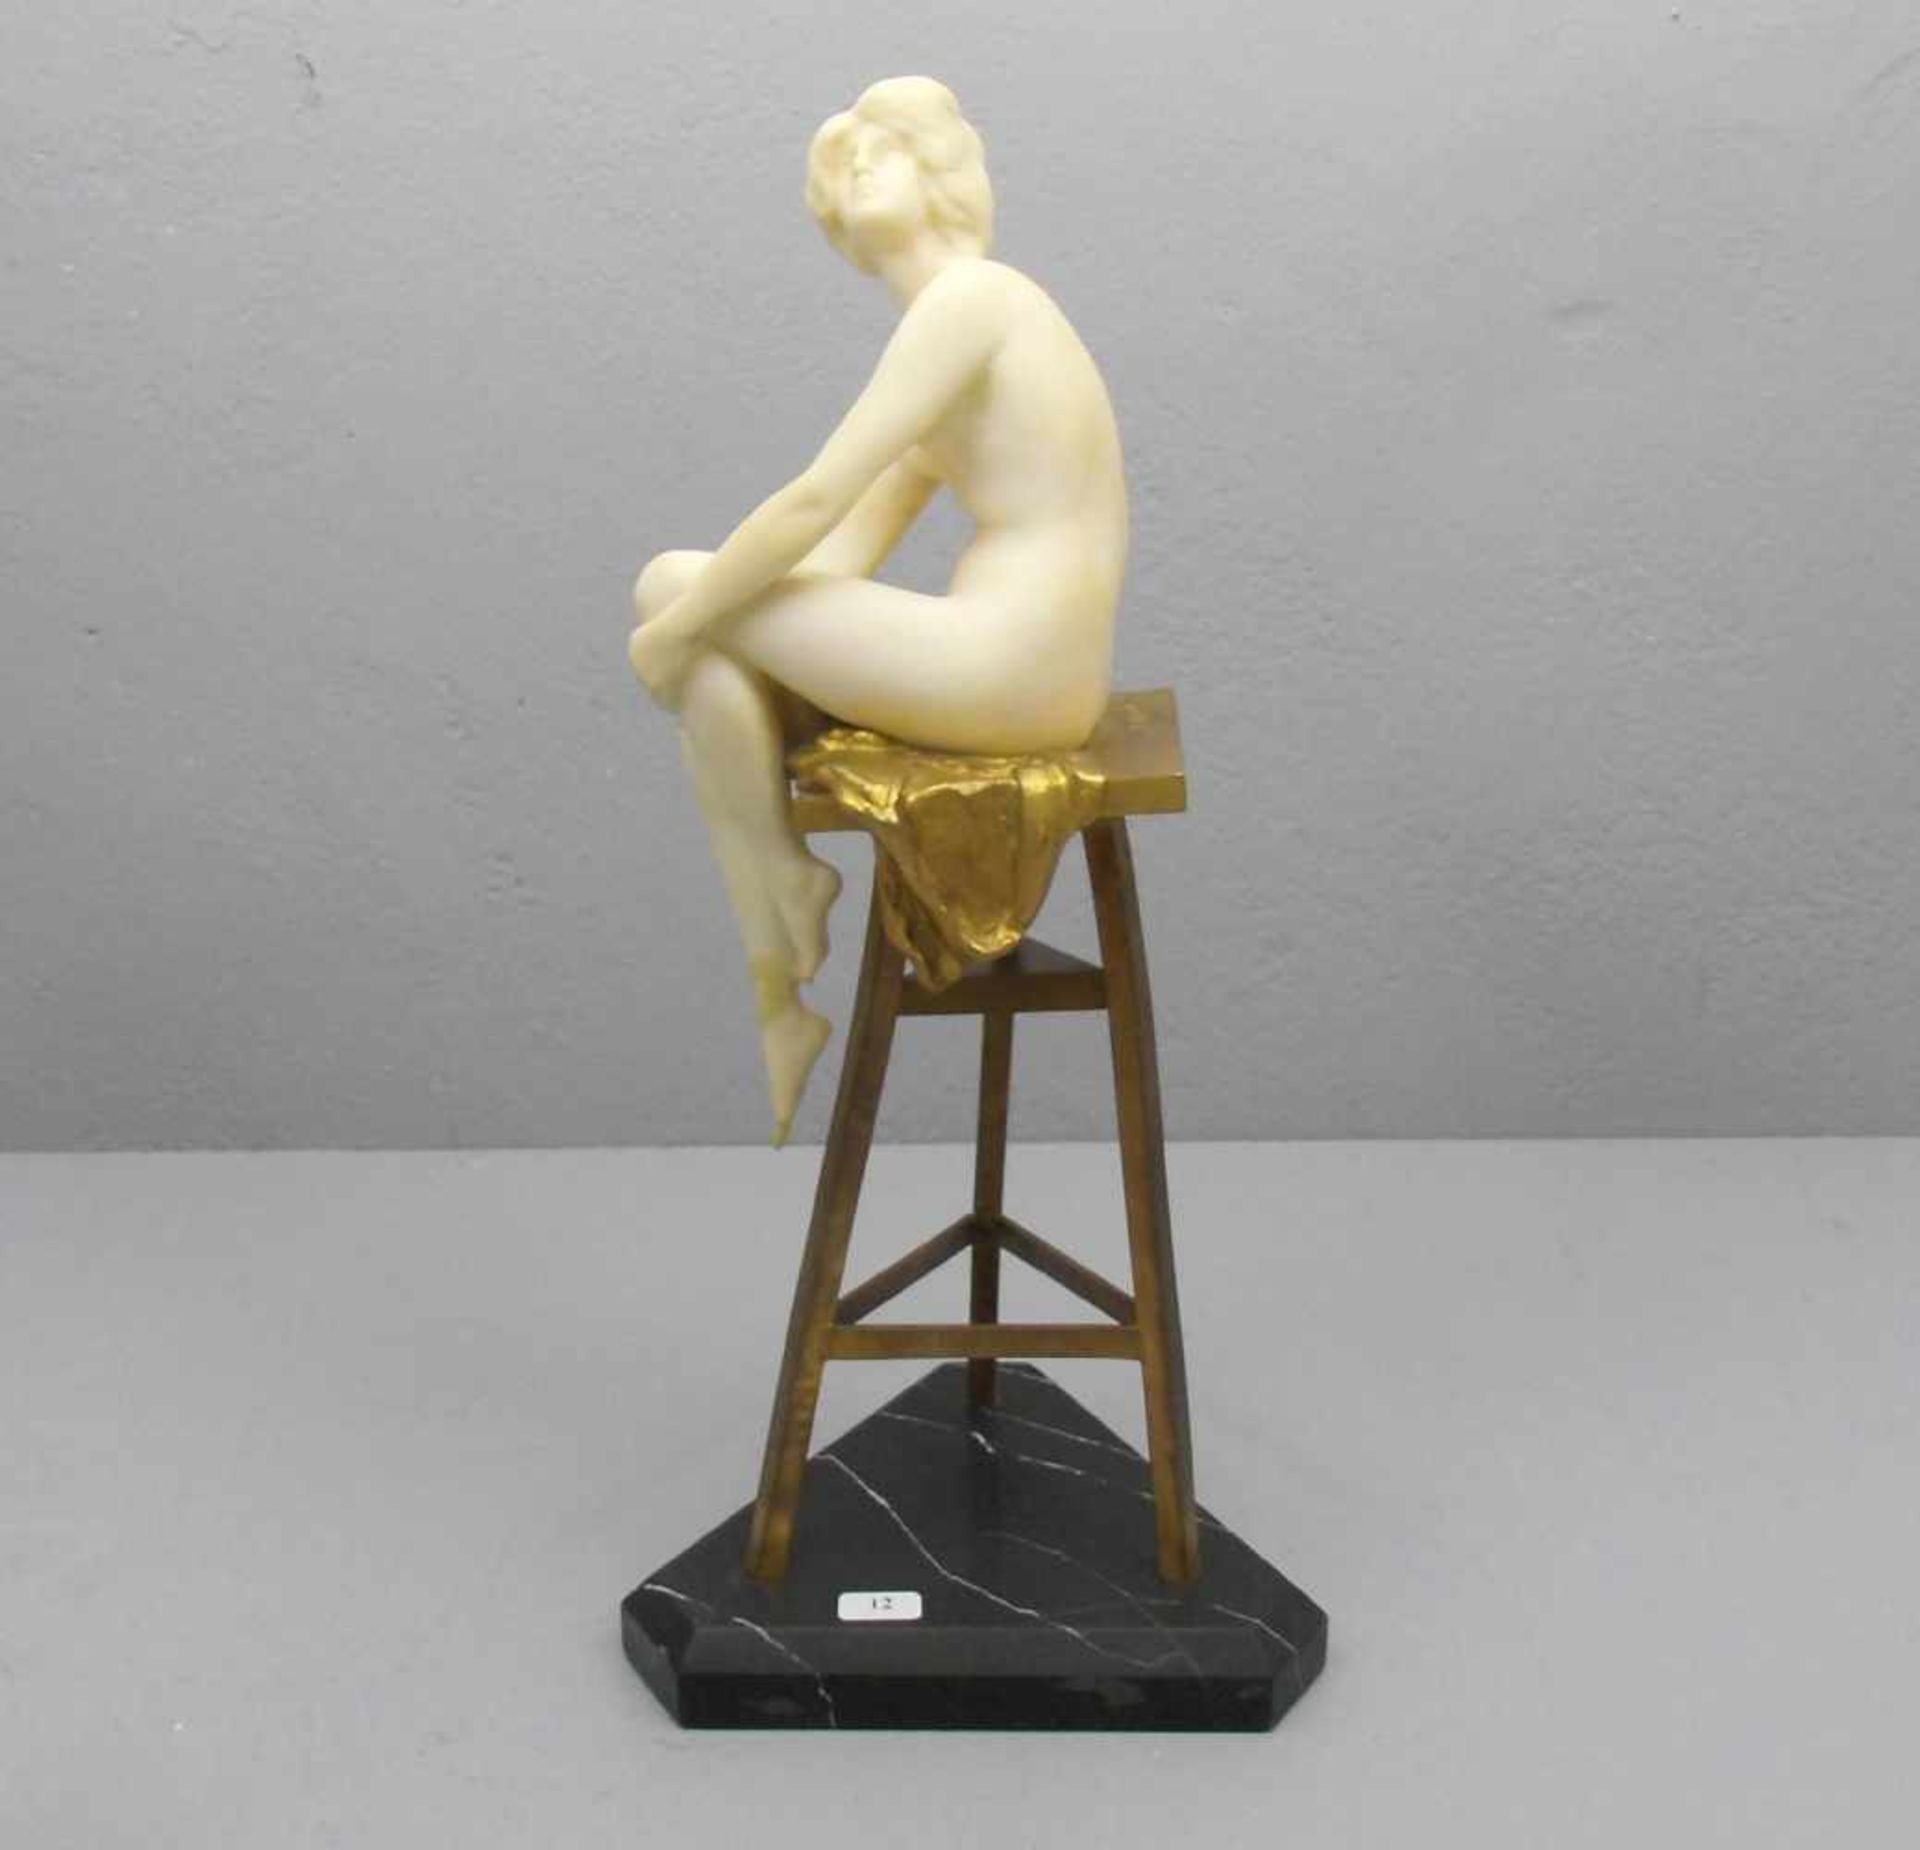 MARCUSE, RUDOLF (gelegentlich auch Markuse; Berlin 1878- ca. 1930), Skulptur: "Das Modell -